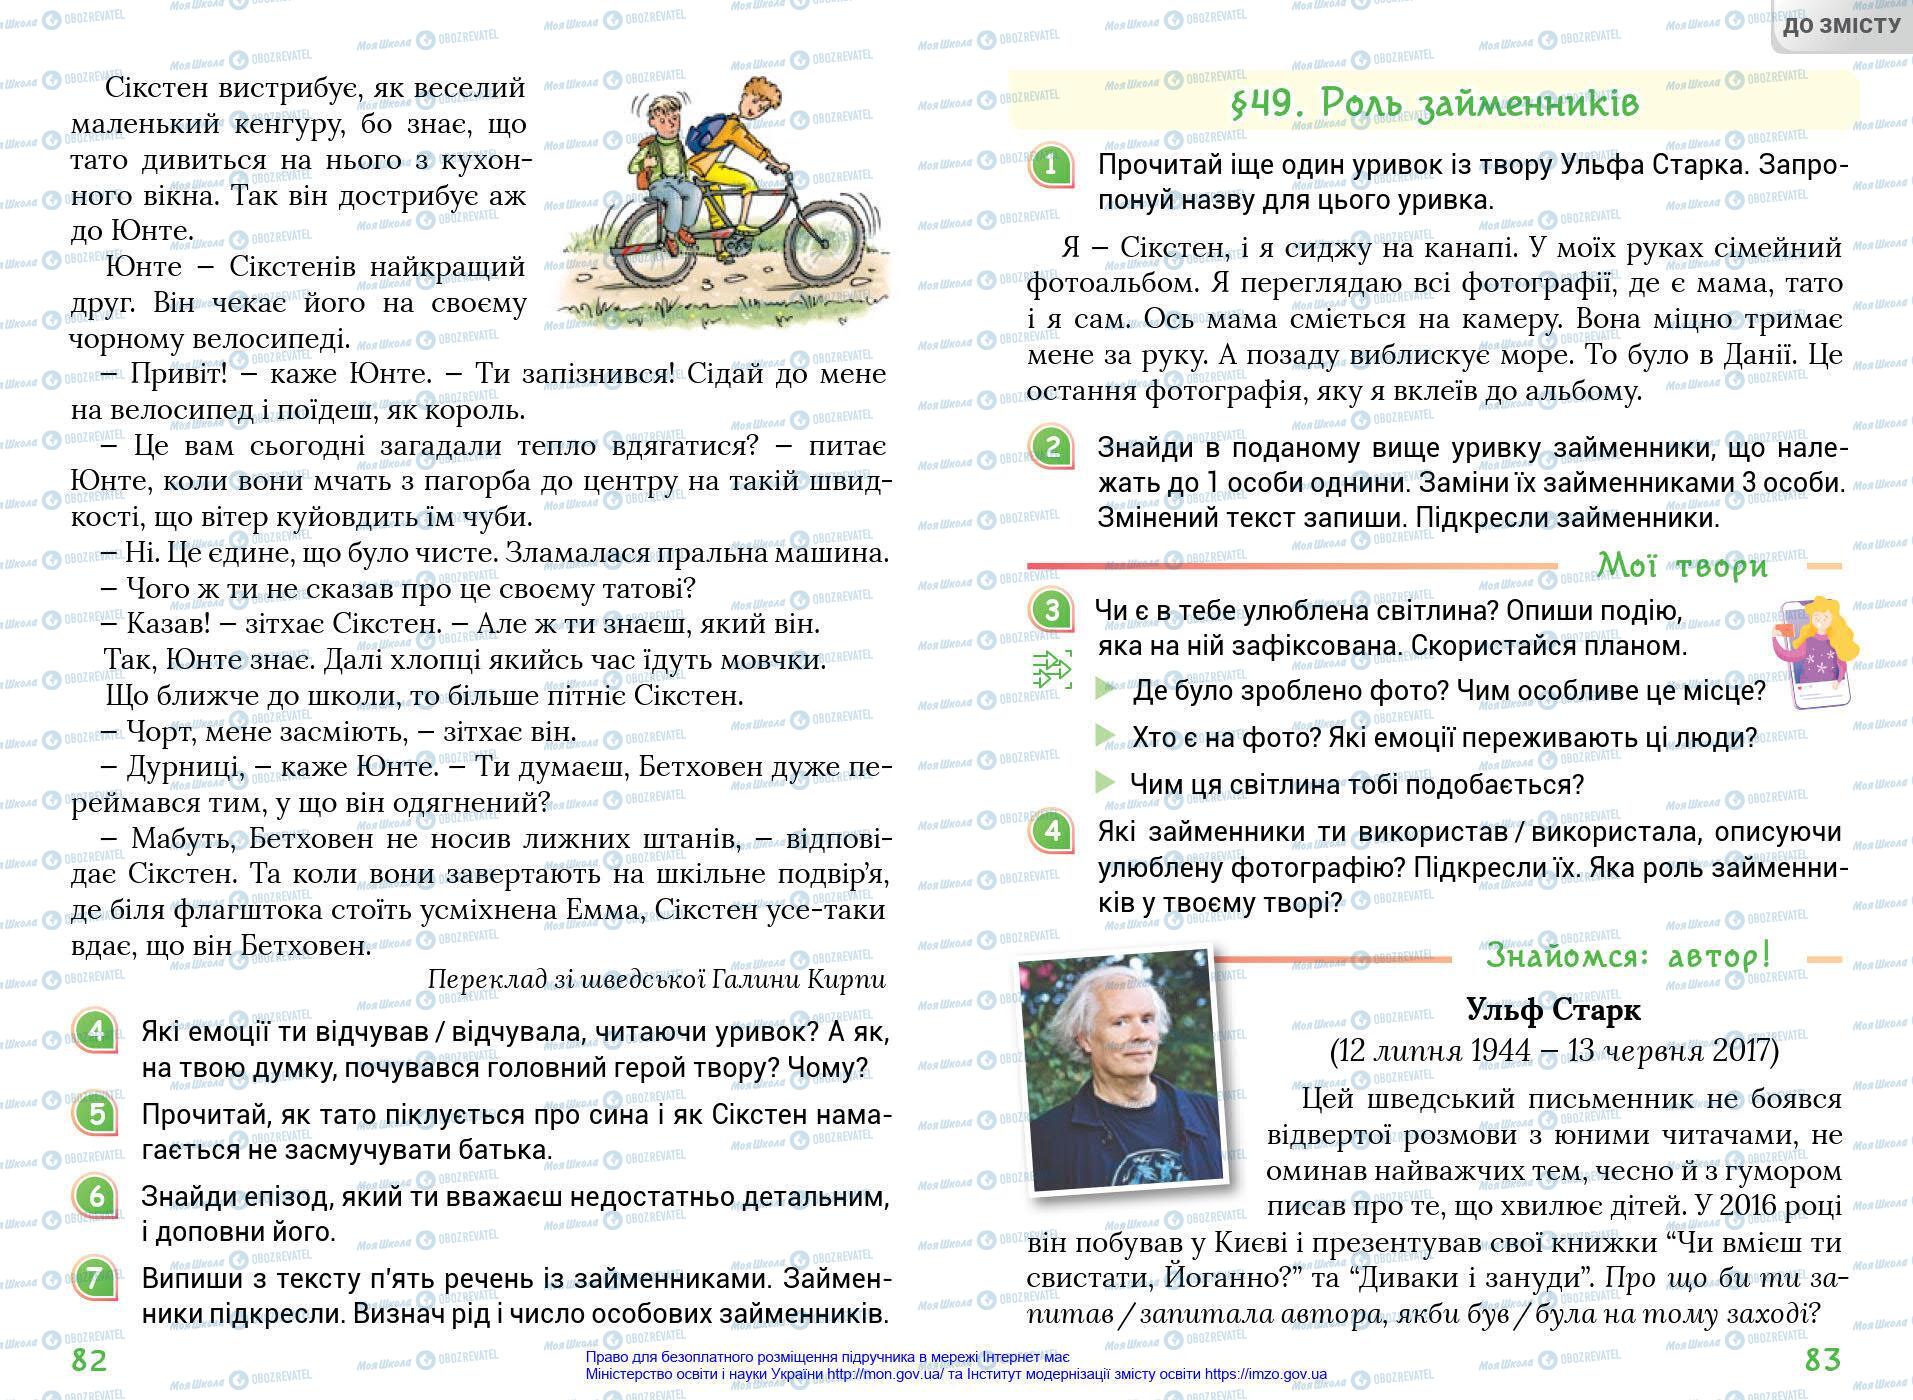 Підручники Українська мова 4 клас сторінка 82-83